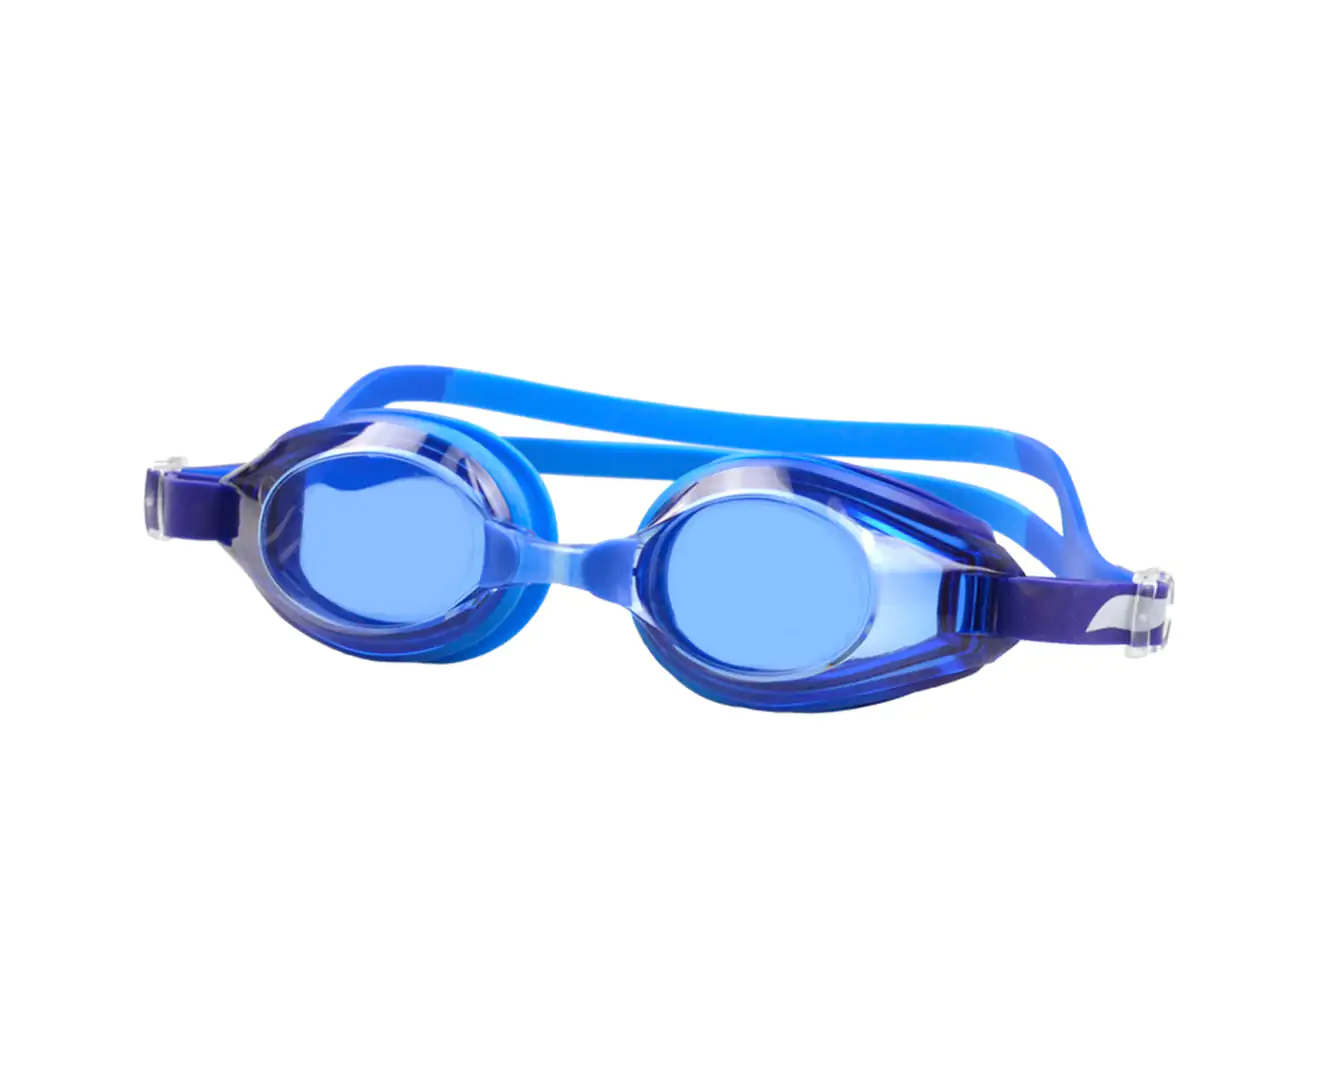 Hilco VANTAGE Swimming Goggles Including Prescription, 60% OFF